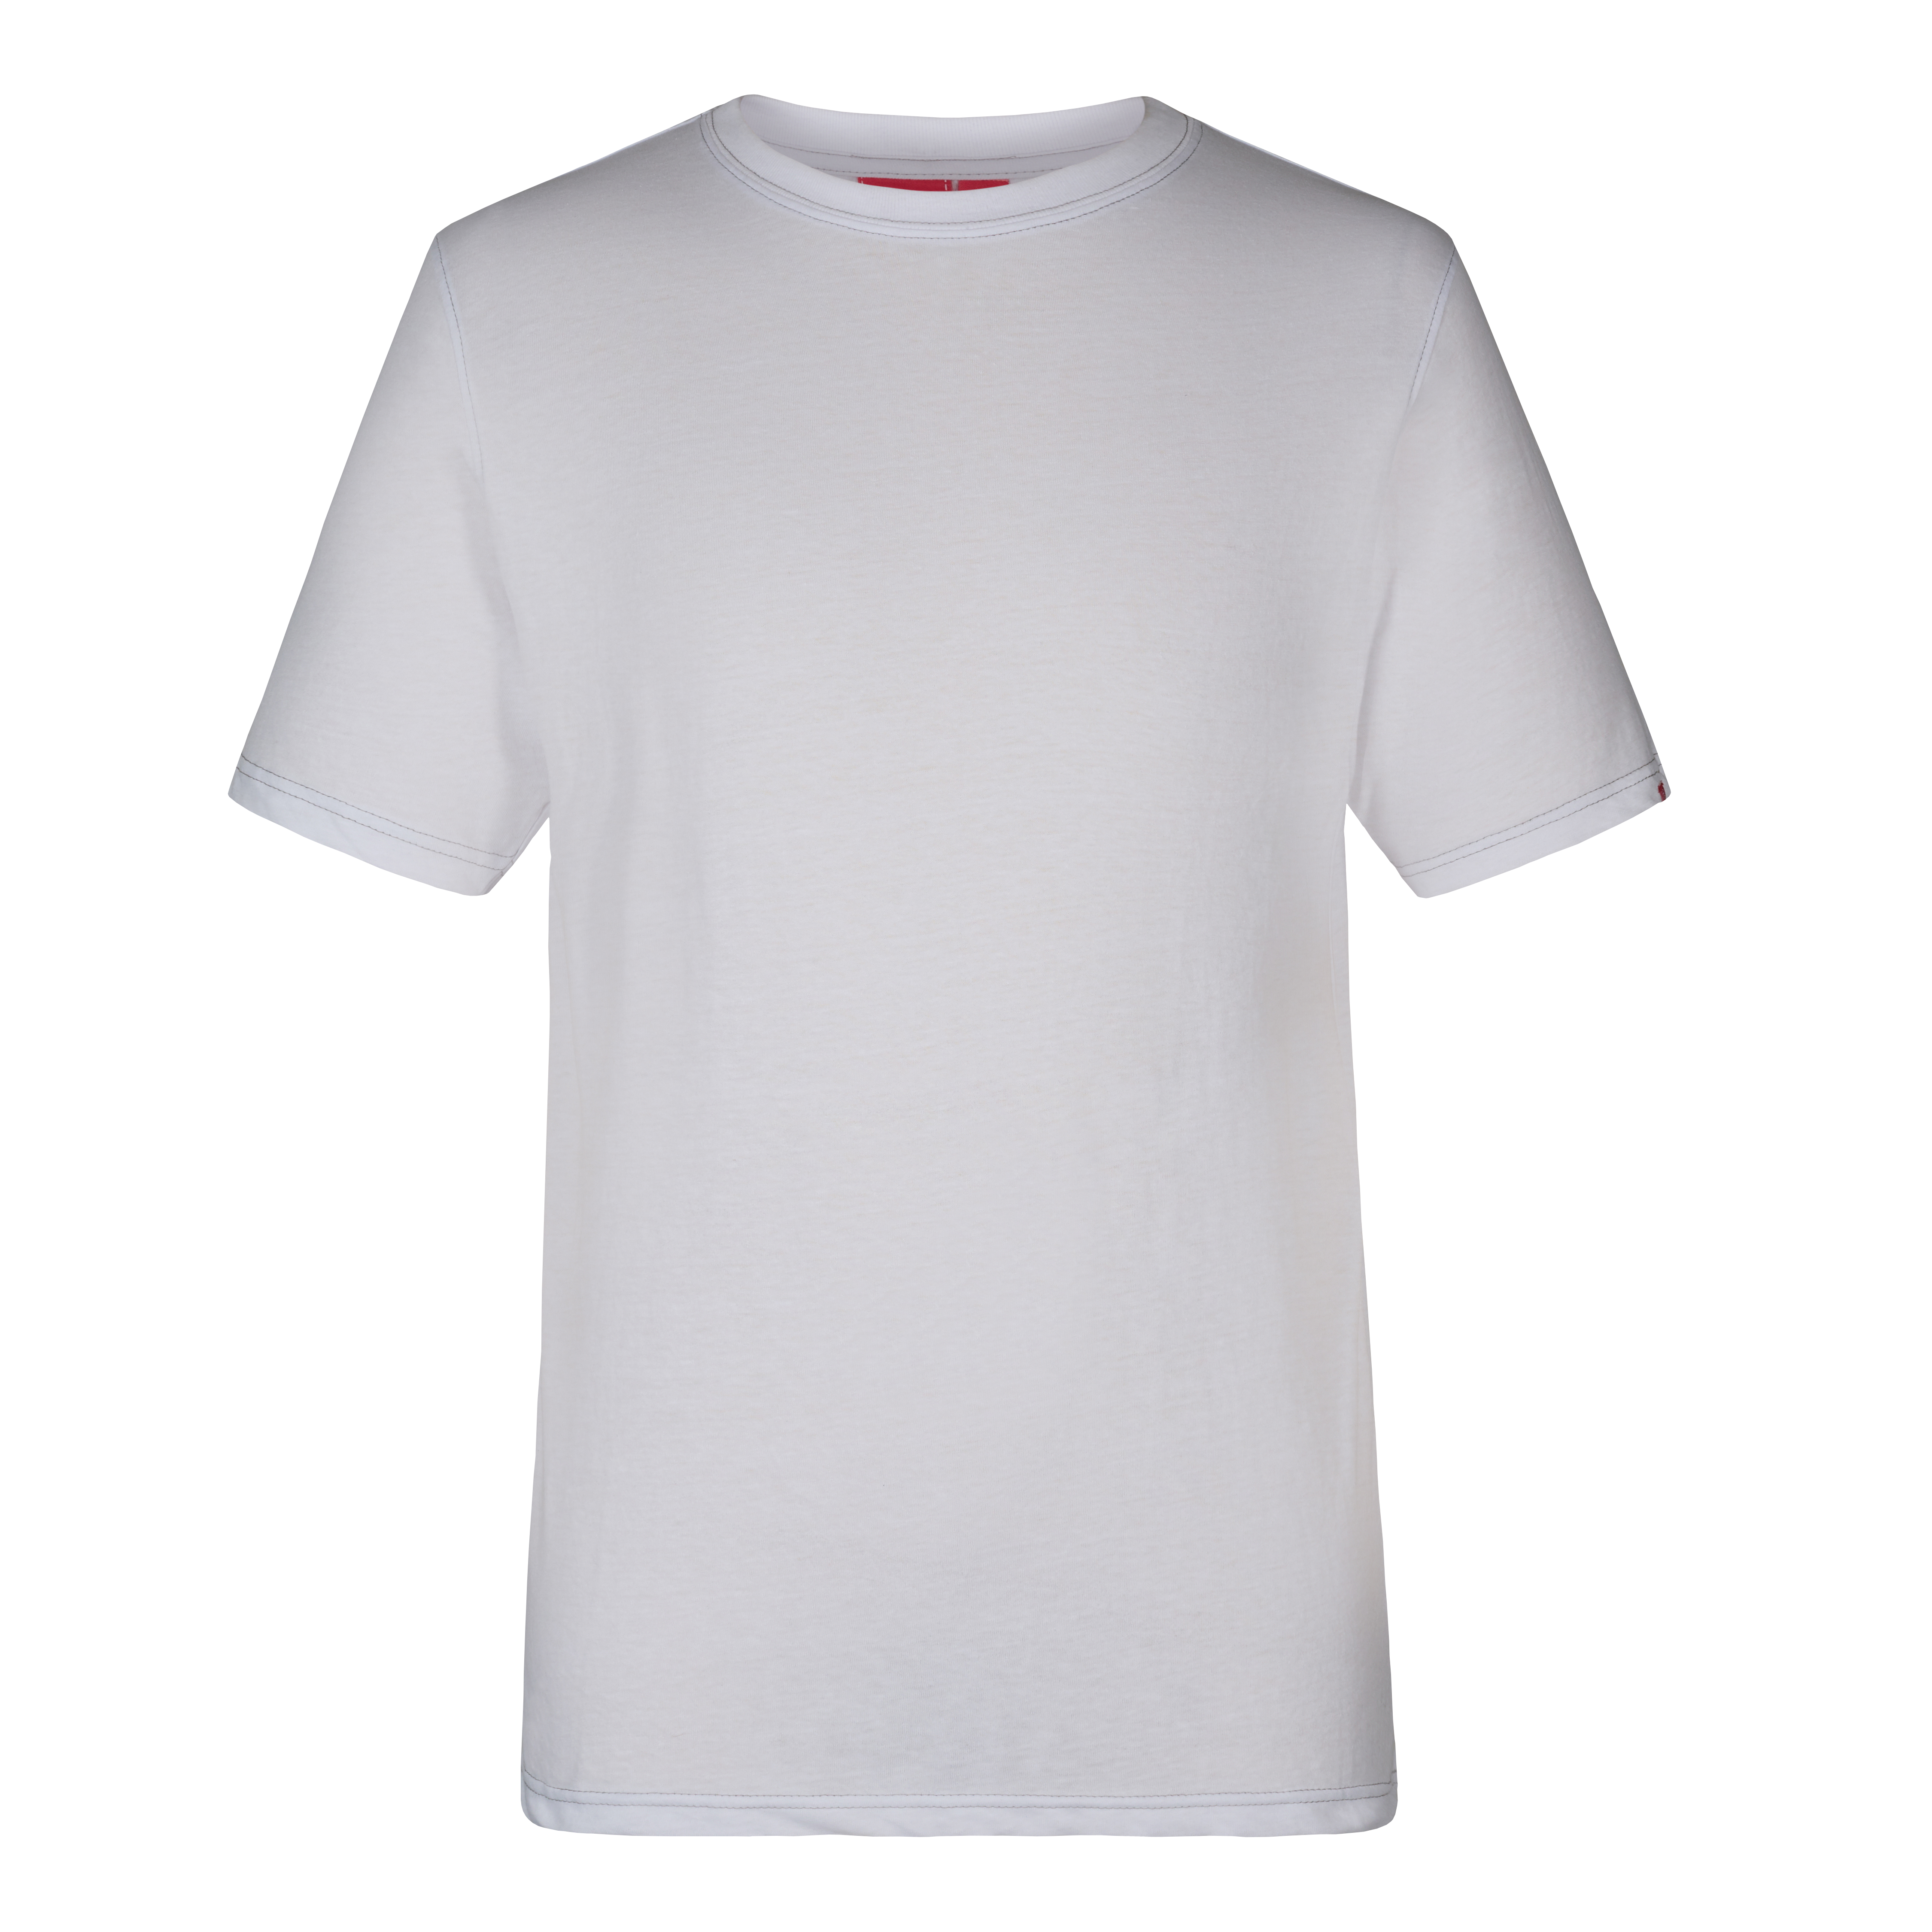 Engel T-Shirt Standard, Weiß